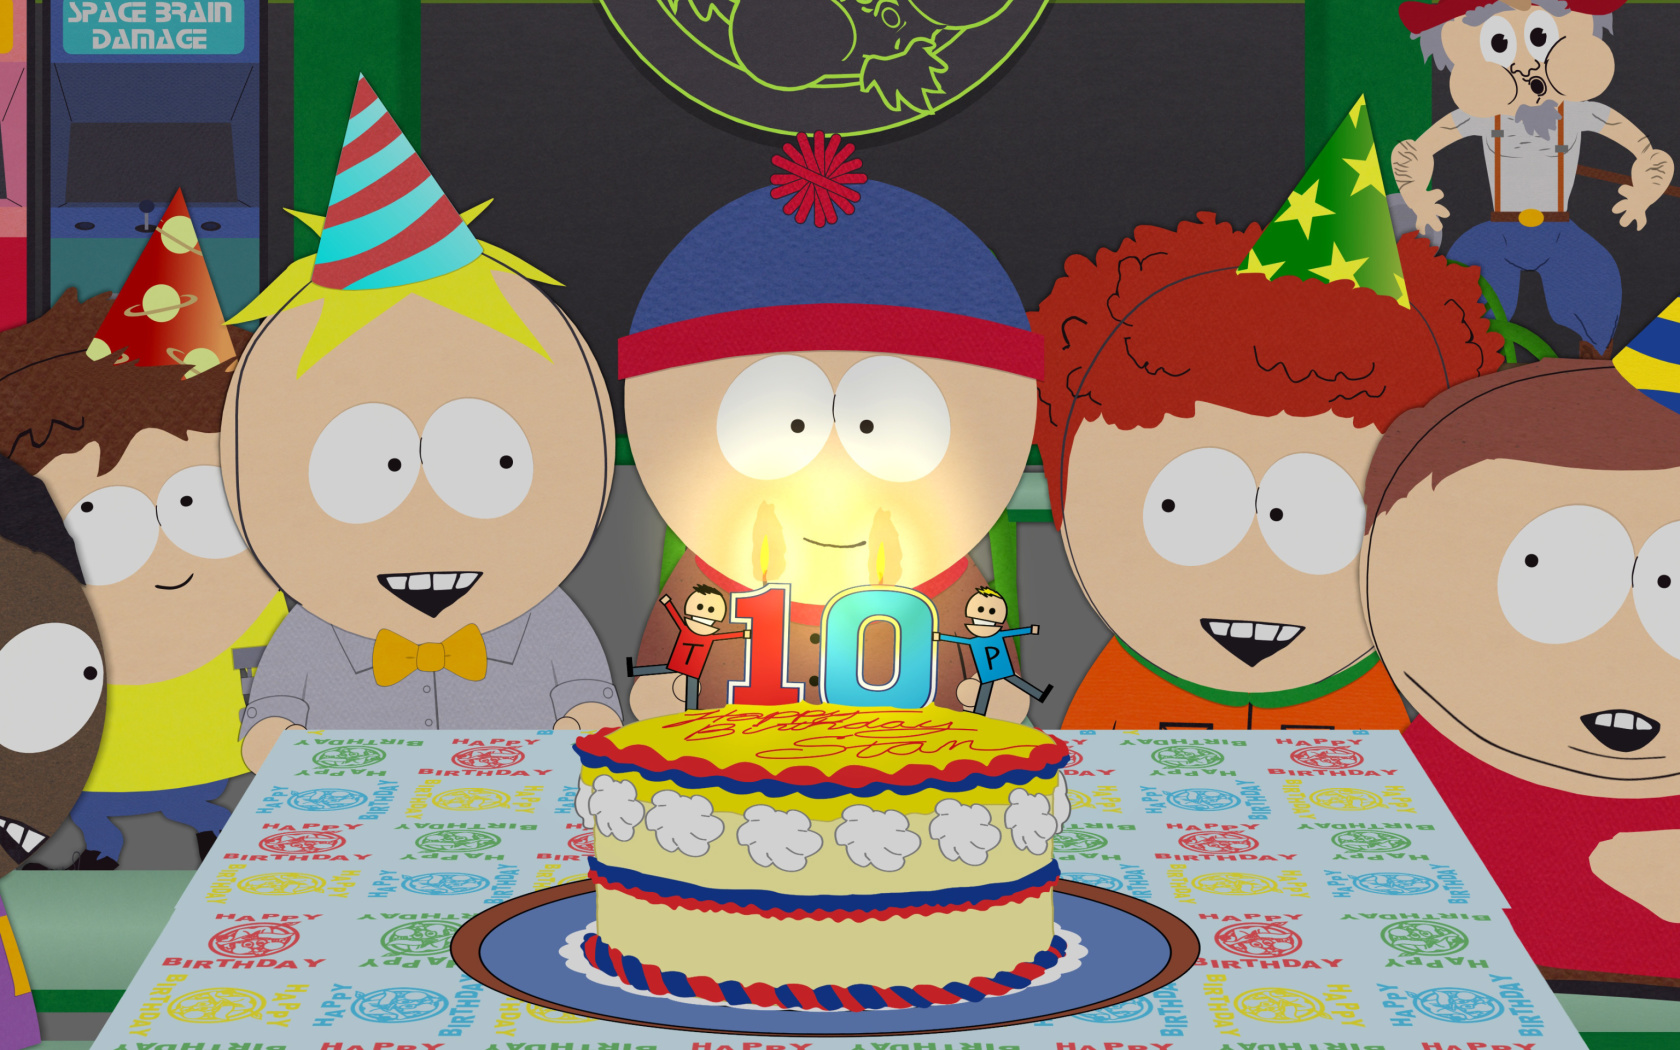 Das South Park Season 15 Stans Party Wallpaper 1680x1050